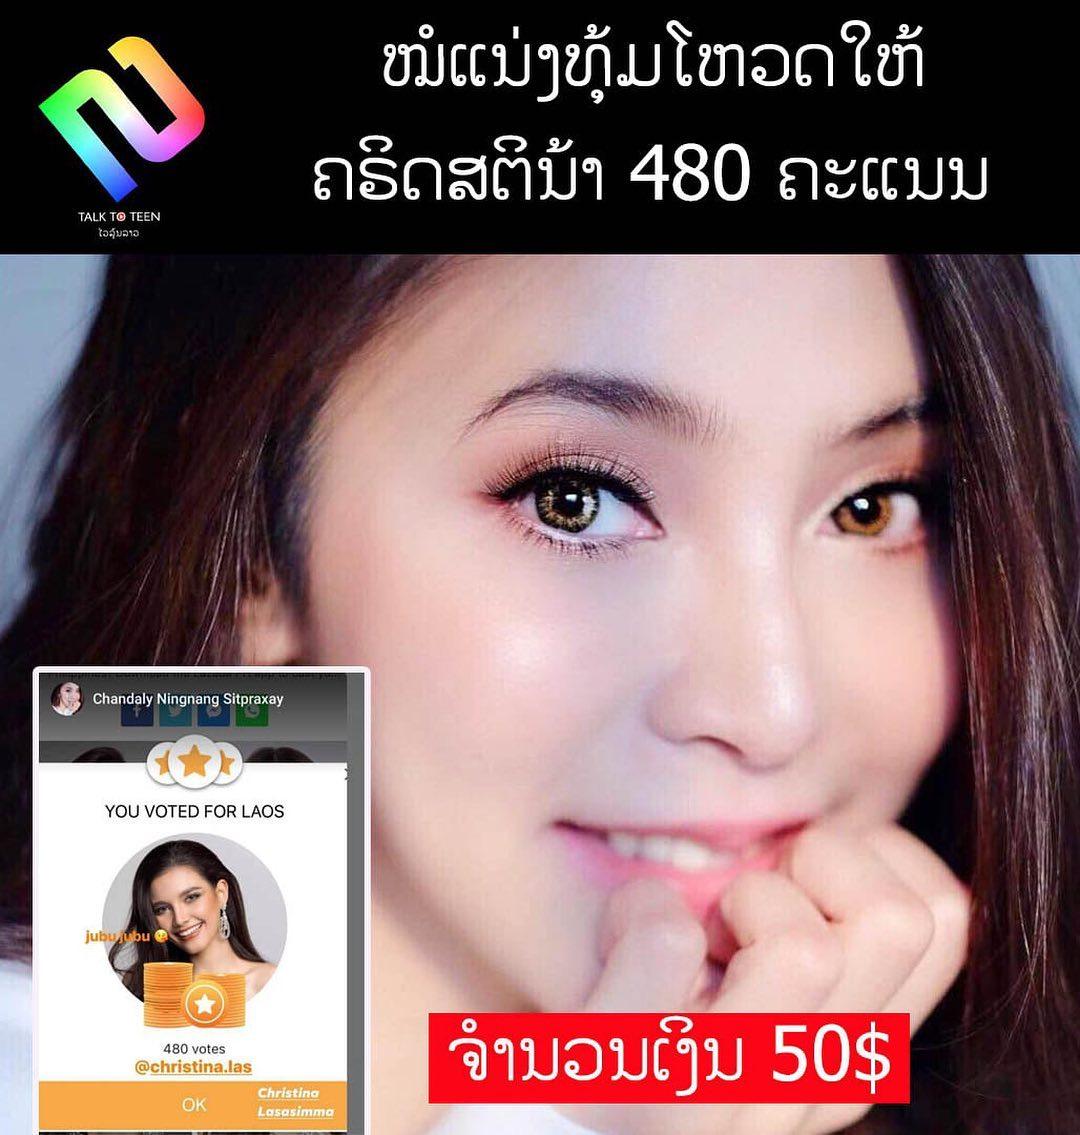 class="content__text"
 ໝໍແນ່ງນັກສະແດງຊື່ດັງຂອງລາວ ແລະ ເປັນໝໍທີ່ໃຈບຸນແຖມຍັງງາມອີກ ໄດ້ທຸ້ມໂຫວດໃຫ້ນາງງາມລາວ Christina Lasasimma Miss Universe Laos 2020 ເປັນຄະແນນທັງໝົດ 480 ຄະແນນຫຼືໄລ່ເປັນເງິນແມ່ນ 50$ ເປັນເງິນກີບປະມານ 500,000 ກີບ ໂອ້ໂຫຖືວ່າເປັນການ Support ທີ່ຍັງບໍ່ທັນເຫັນໃຜໃຈສະປອດປານນີ້ເລີຍ ຕັ້ງແຕ່ແອດຕິດຕາມນາງງາມມາໝໍແນ່ງຄືສິເປັນຄົນໂຫວດໃຫ້ຄະແນນຫຼາຍສຸດແລ້ວ 
ໃຜຢາກຕິດຕາມໝໍແນ່ງຕິດຕາມໄດ້ທີ FB: Chandaly Ningnang Sitpraxay ແລະ IG: Chandaly.sitphaxay 
ໝູ່ເພື່ອສາມາດໂຫວດໃຫ້ຄຣິດສຕິນ້າໄດ້ທີ່ Link: 
https://www.missuniverse.com/christina-lasasimma?fbclid=IwAR2Qxi9X-hEqArd3sCFeLeU5YIaobtVjW07vtOSv4grnAleyZta6XUjoZdk 
 